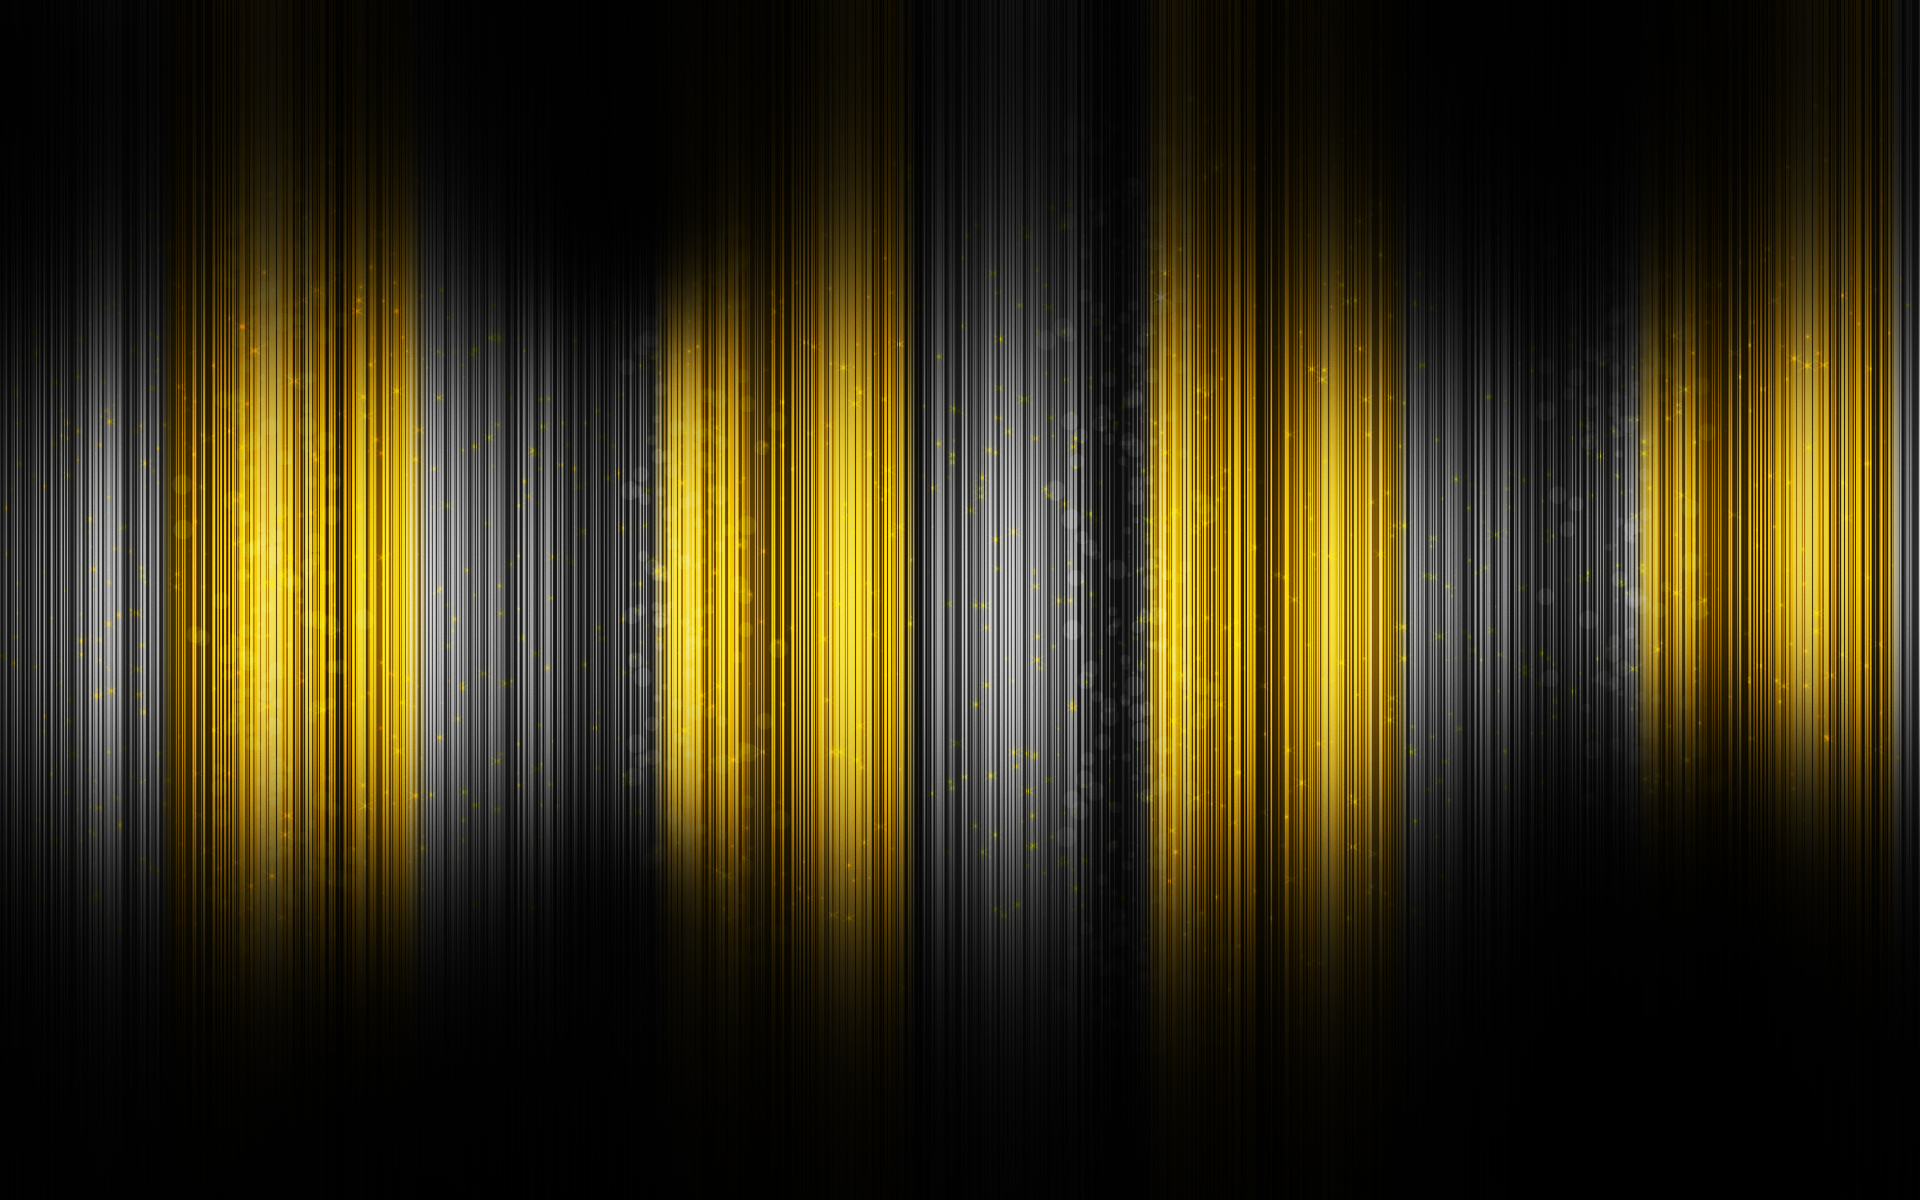 Black and Yellow HD Wallpaper - WallpaperSafari